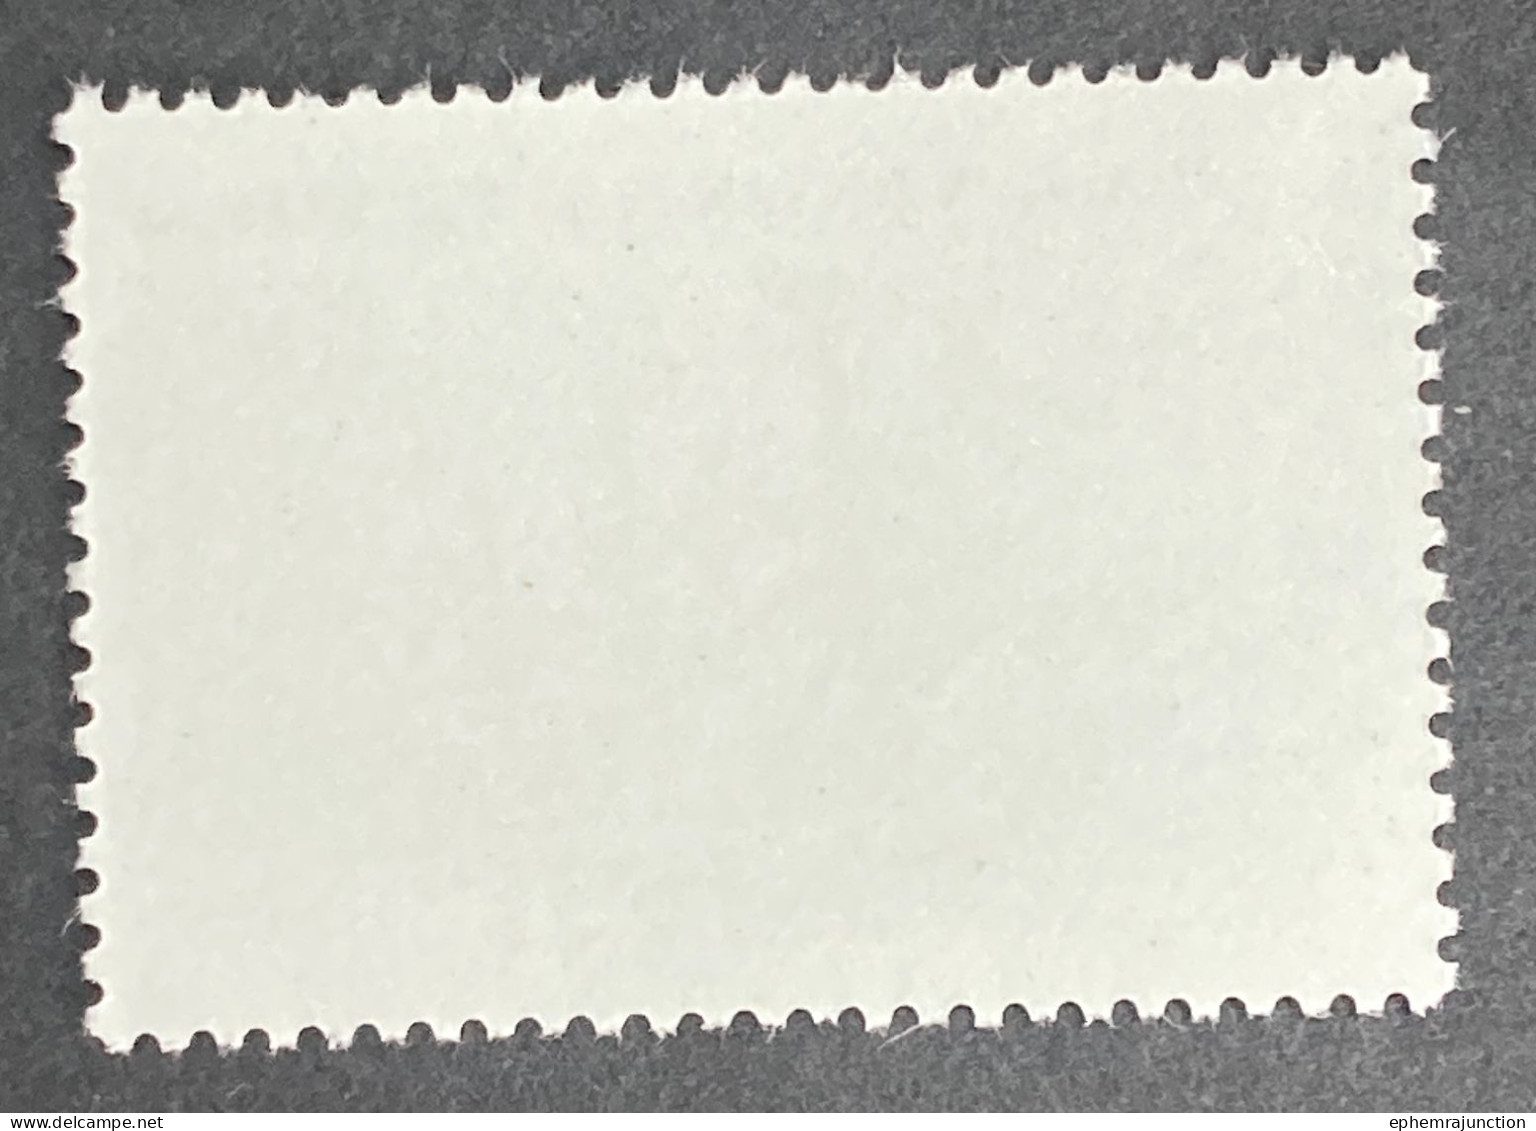 Nimrod 15c Australia Stamp 1980 Sg Aq 41 MNH - Nuovi